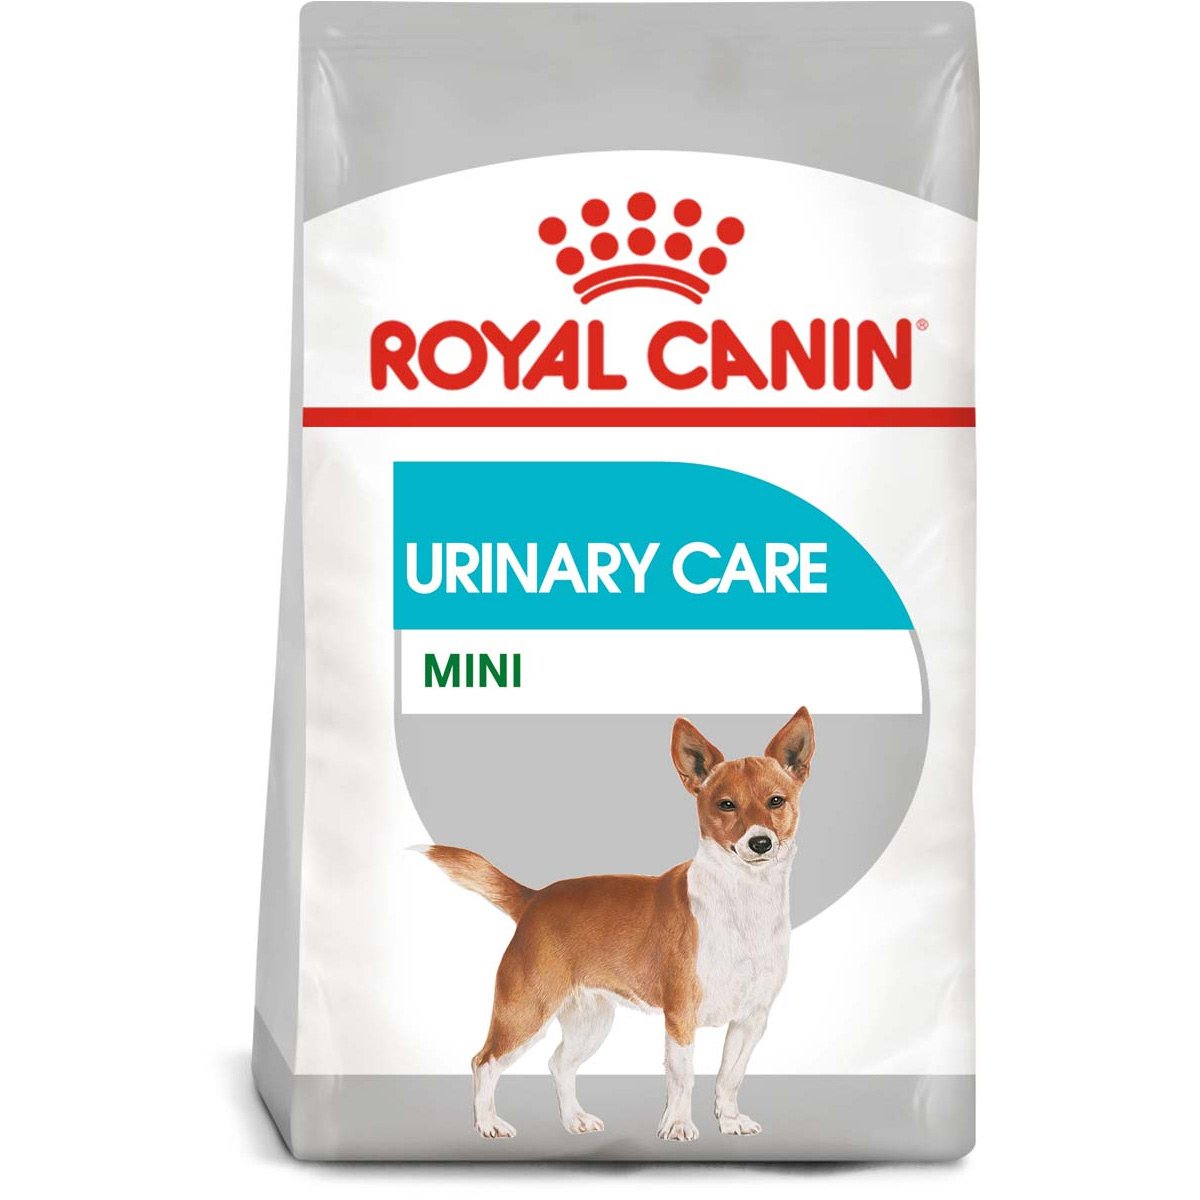 ROYAL CANIN Urinary Care MINI Trockenfutter für kleine Hunde mit empfindlichen Harnwegen 3kg von Royal Canin